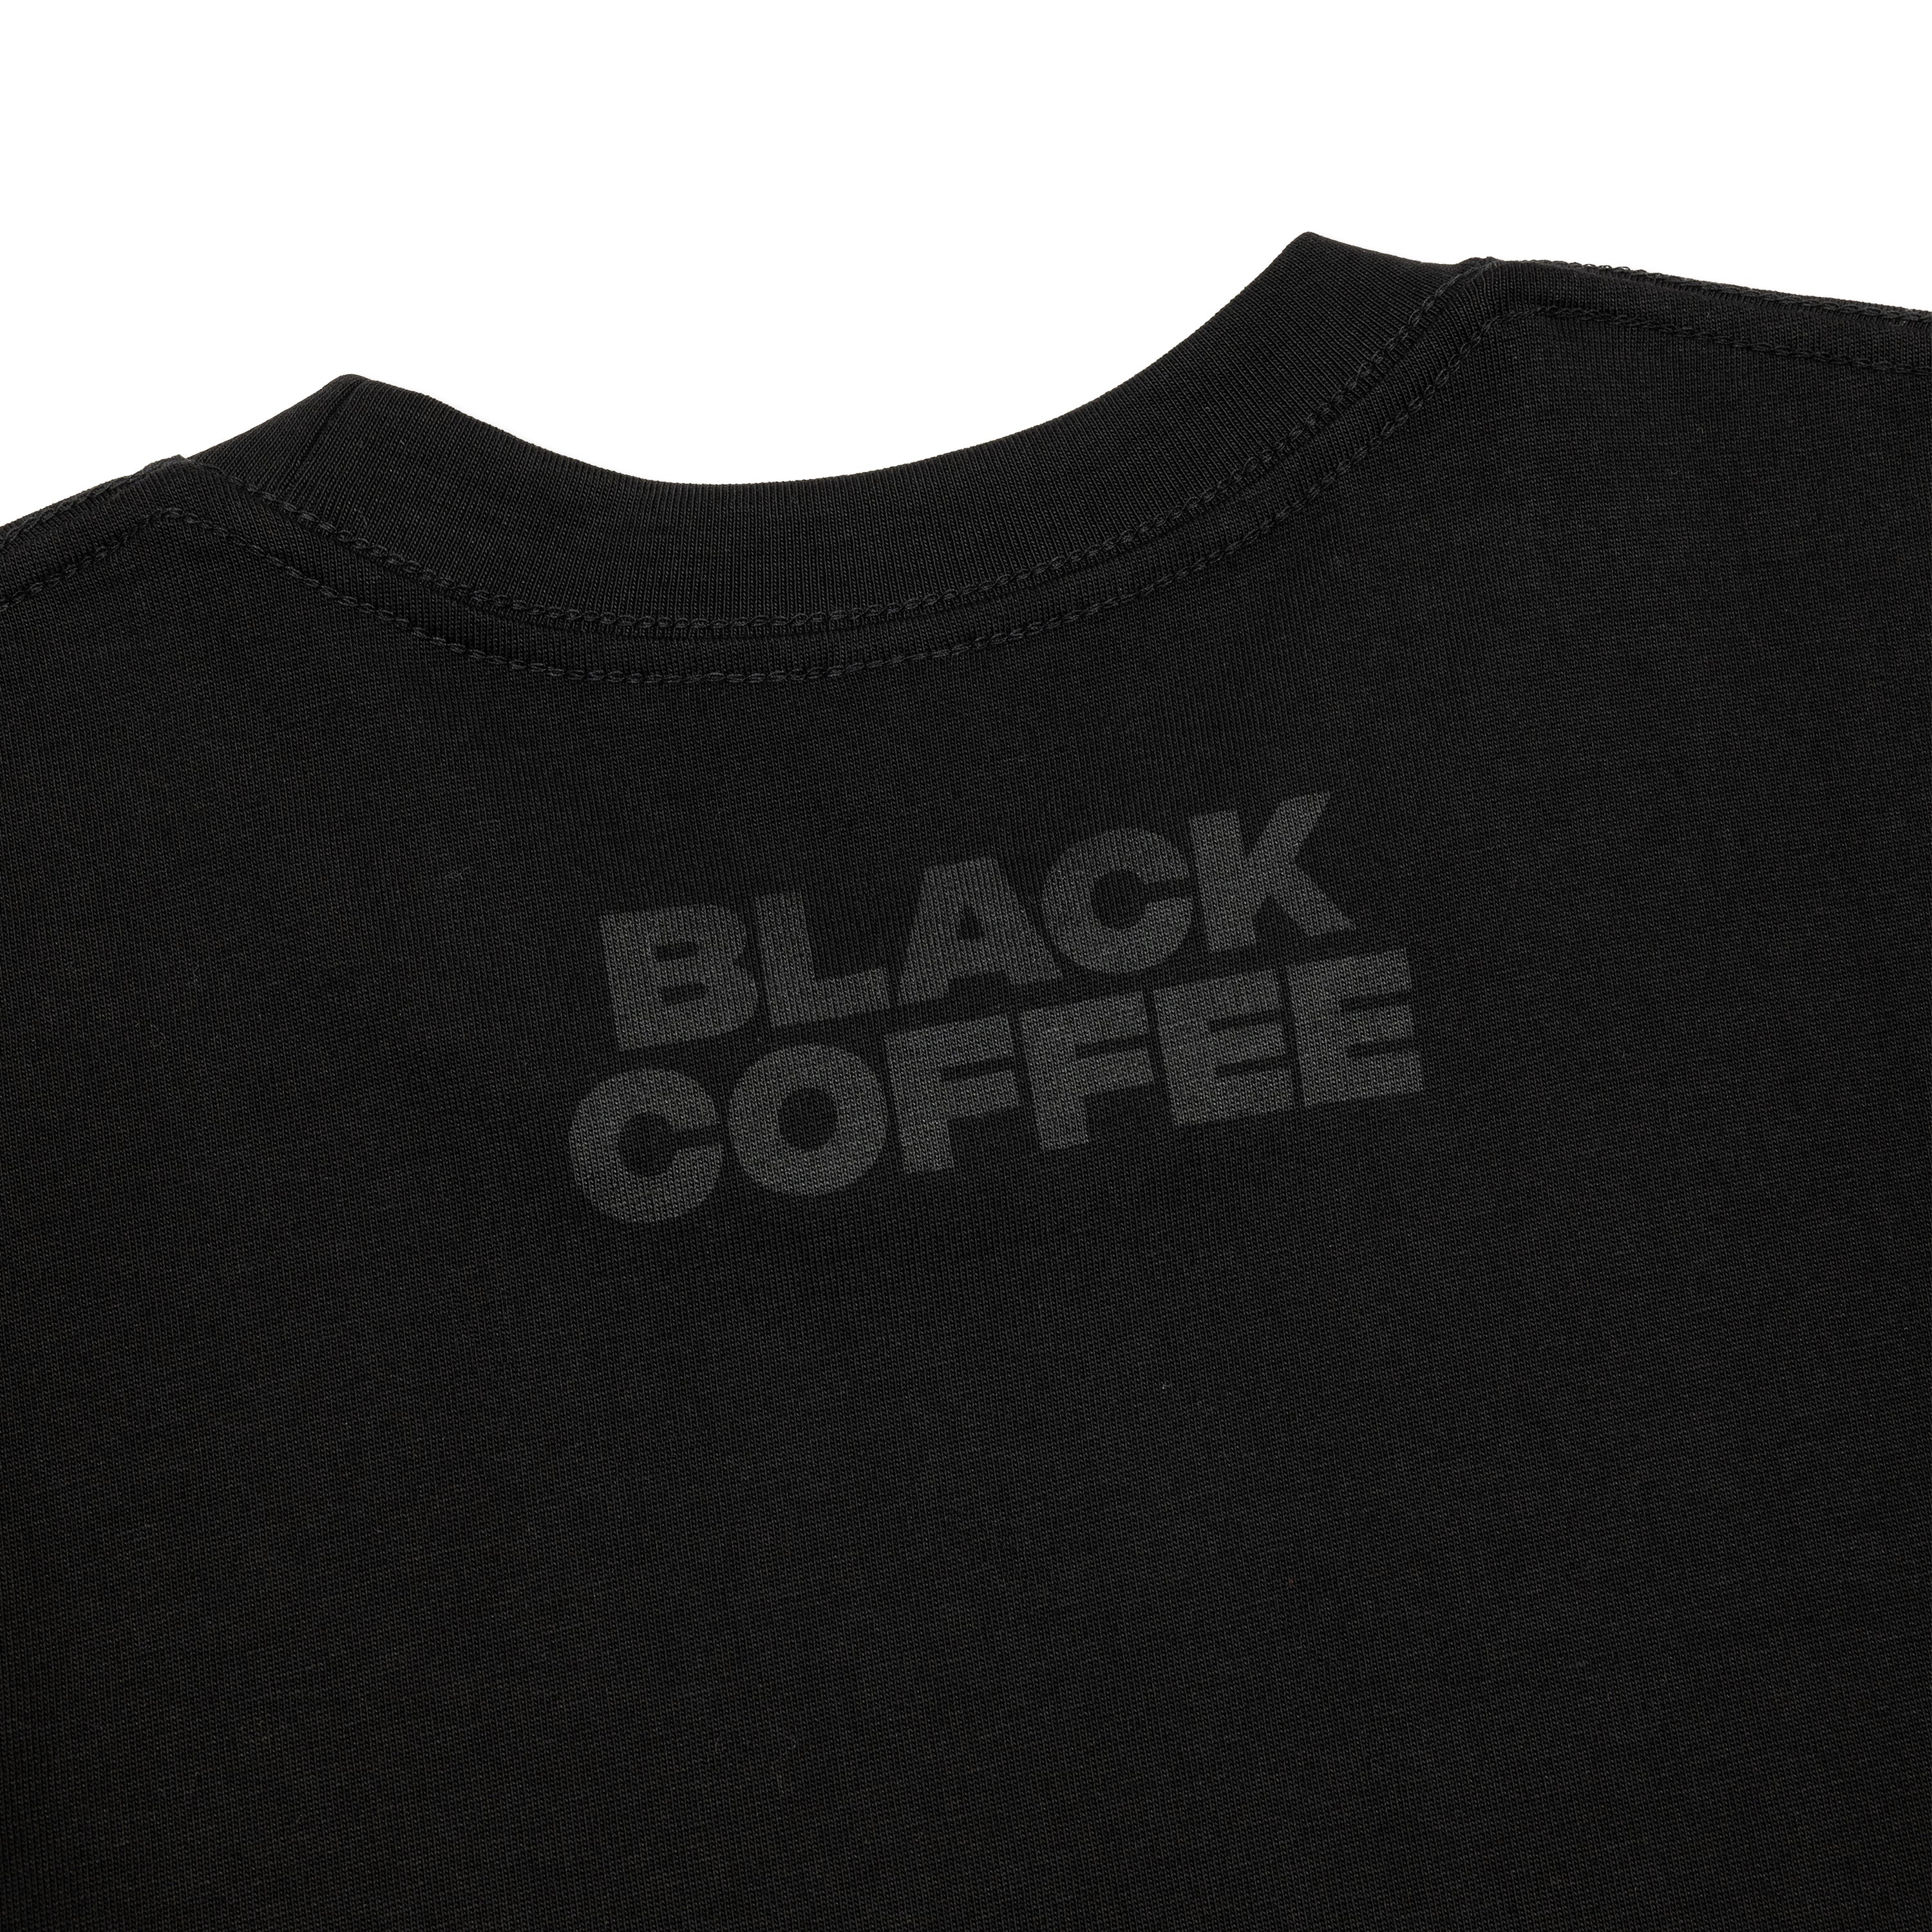 Black Coffee - Black on Black Tee